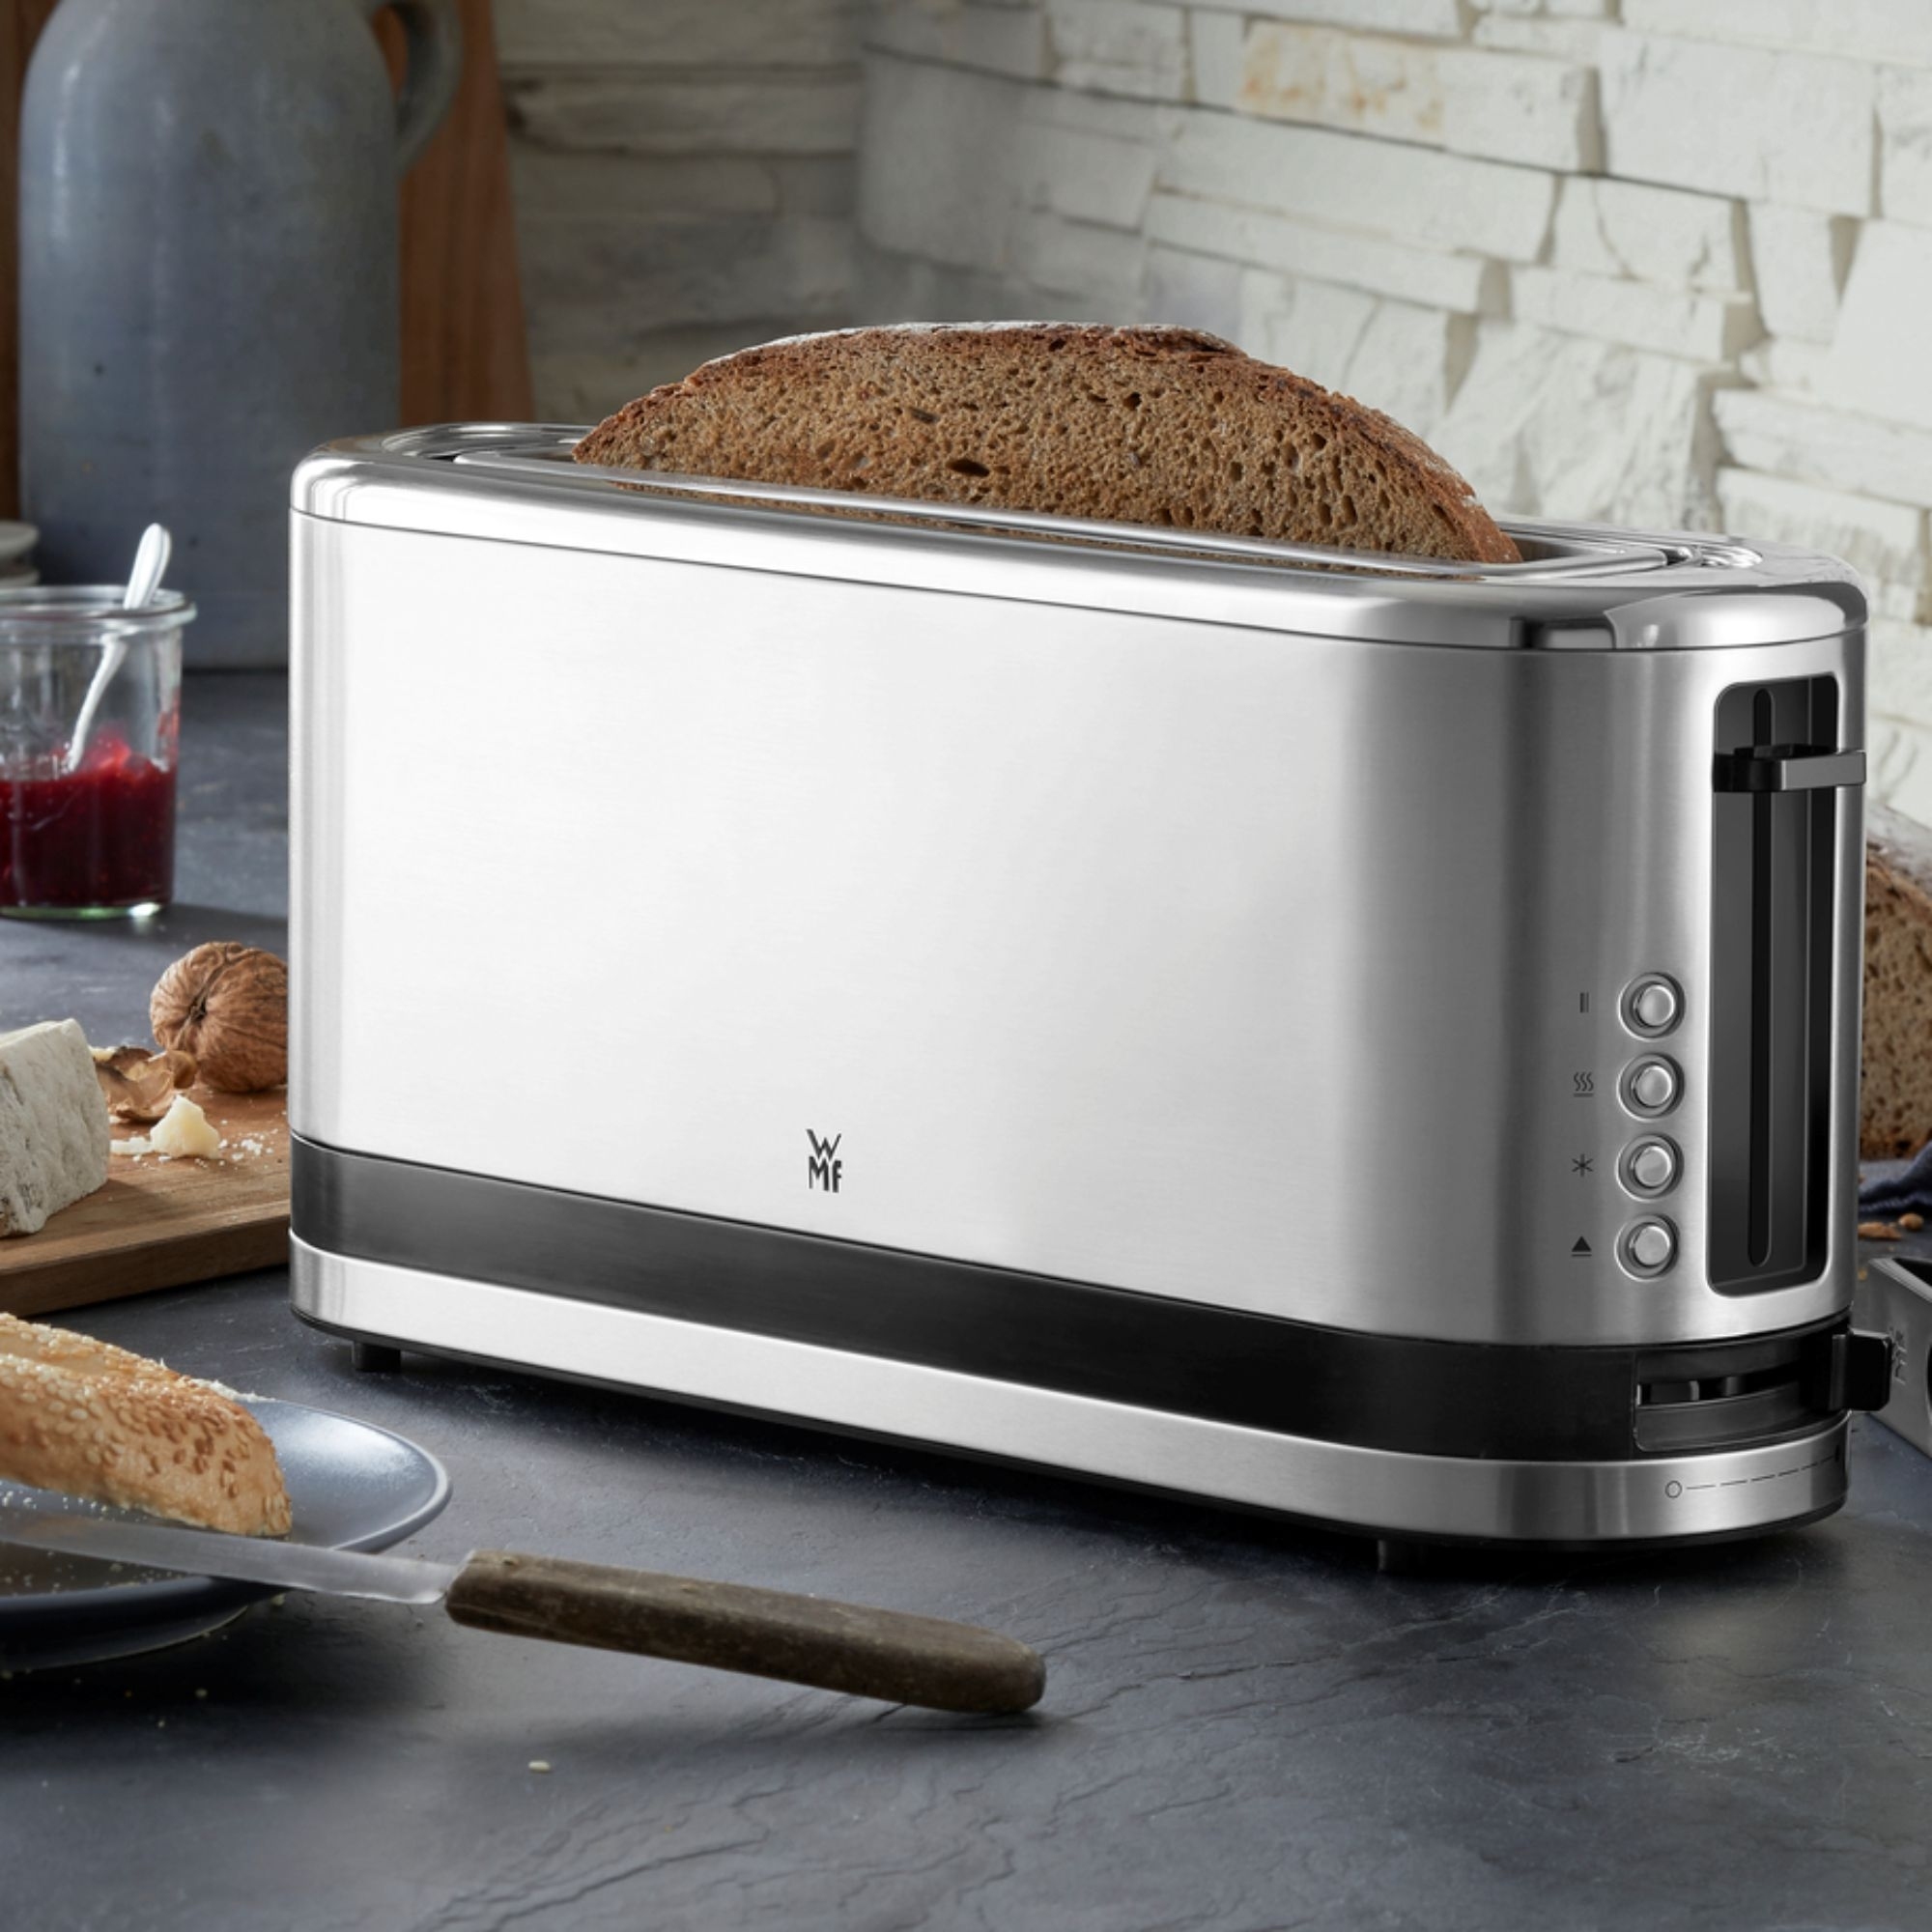 Wmf Kitchenminis long toaster slot